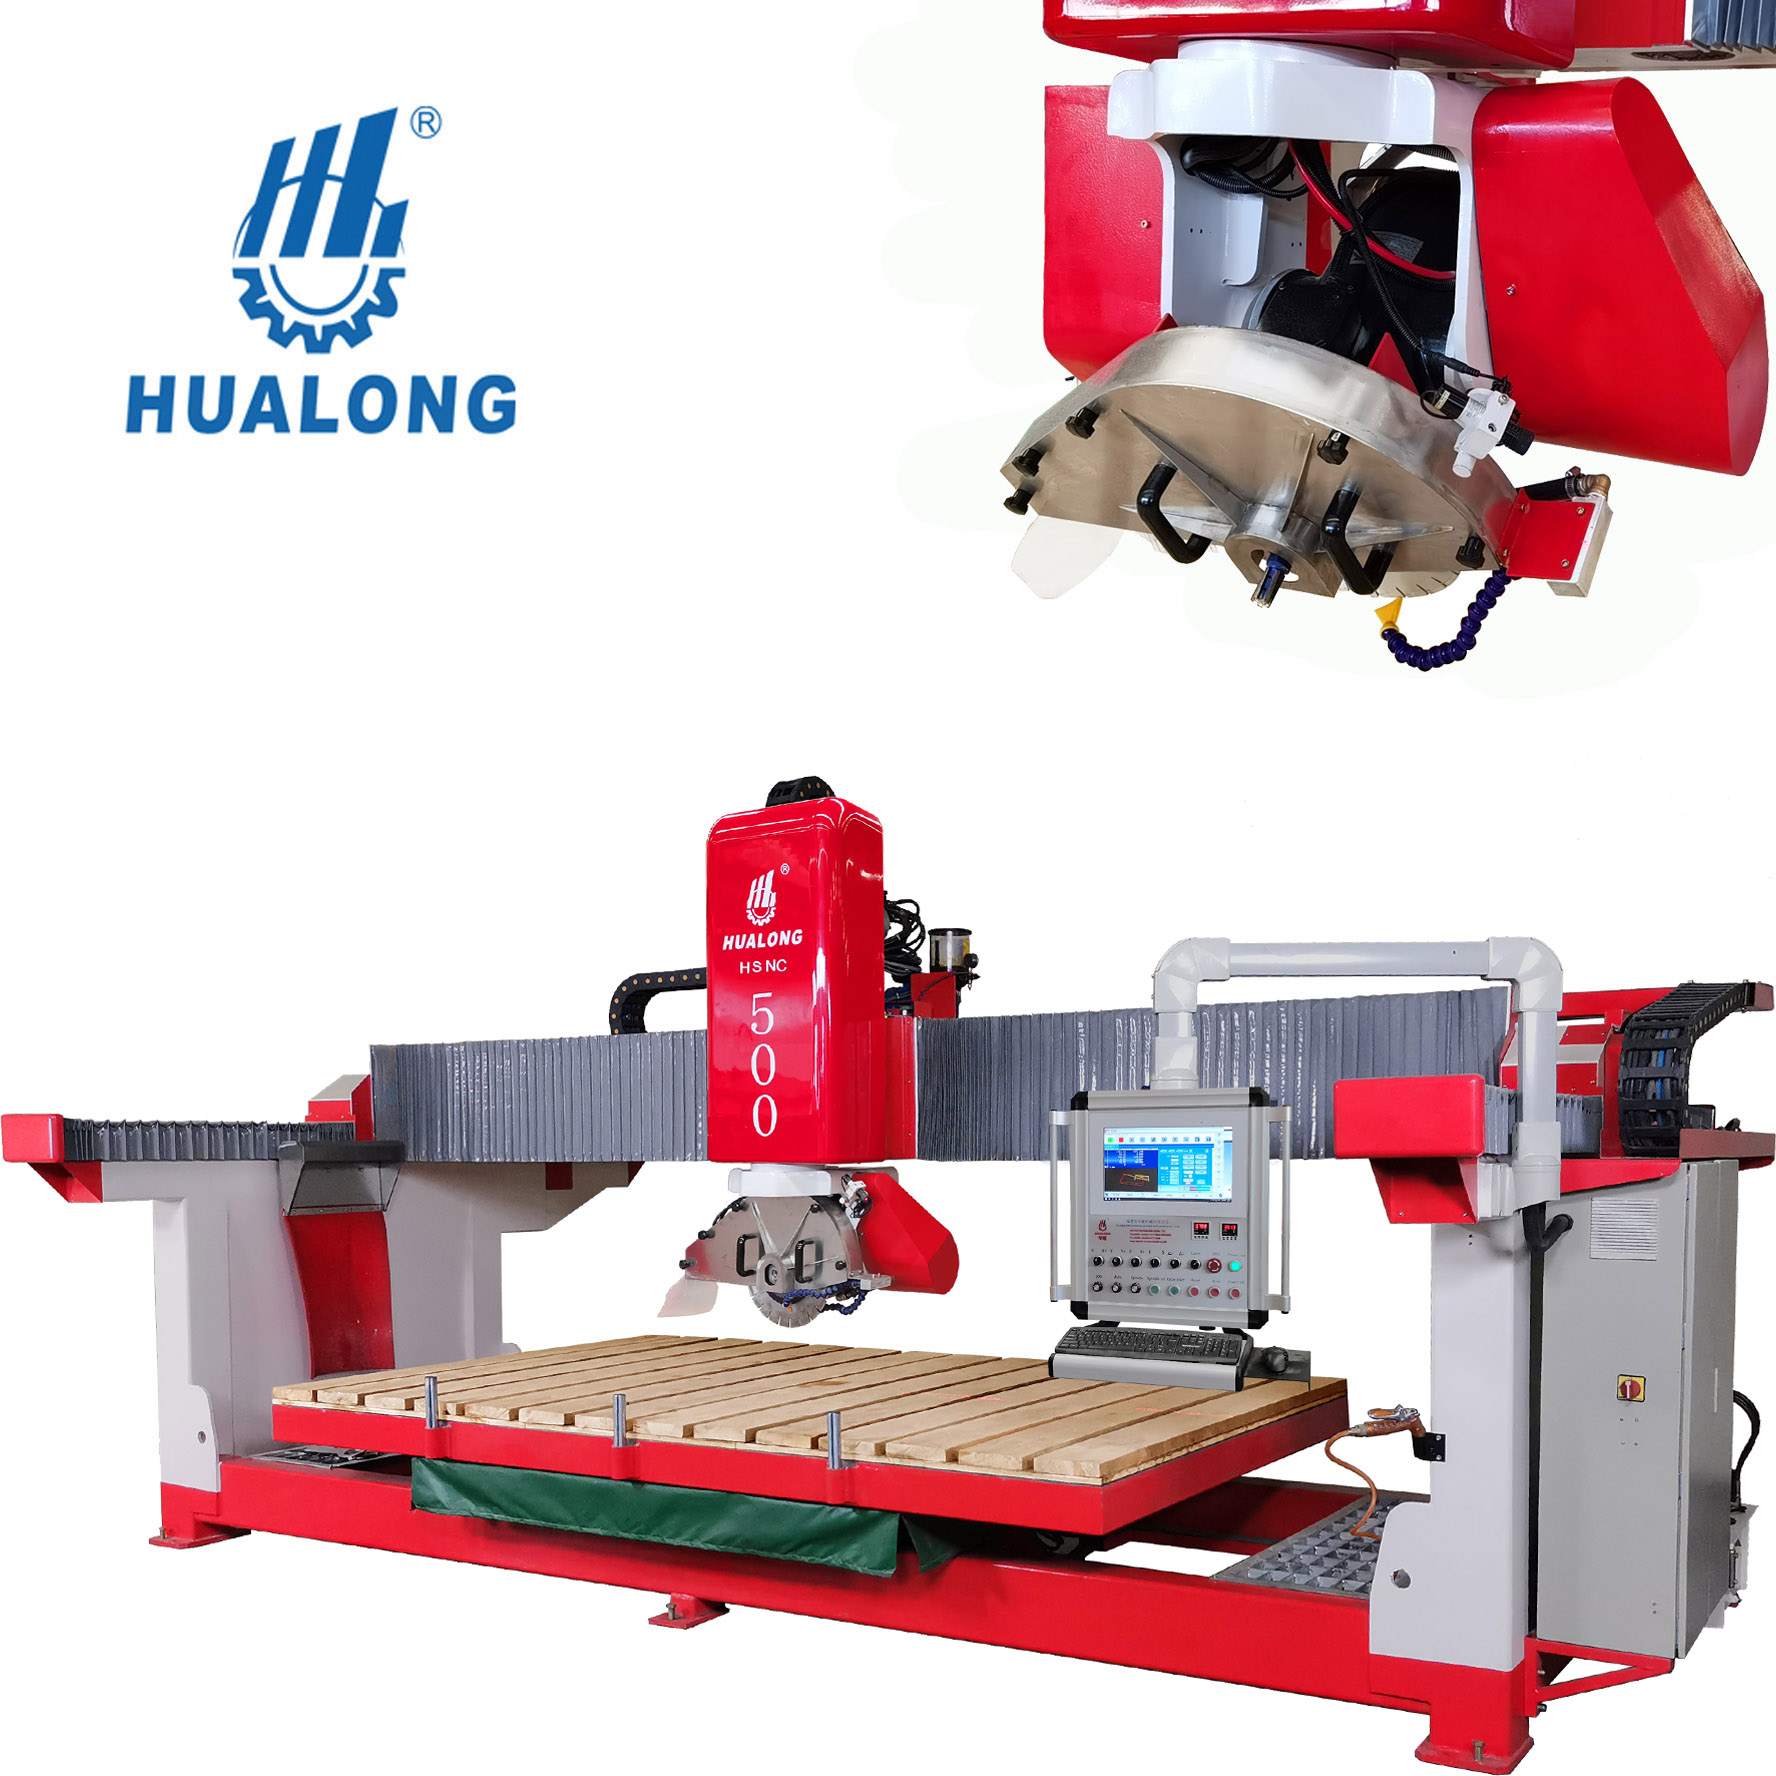 Fabricant de machines CNC en Chine